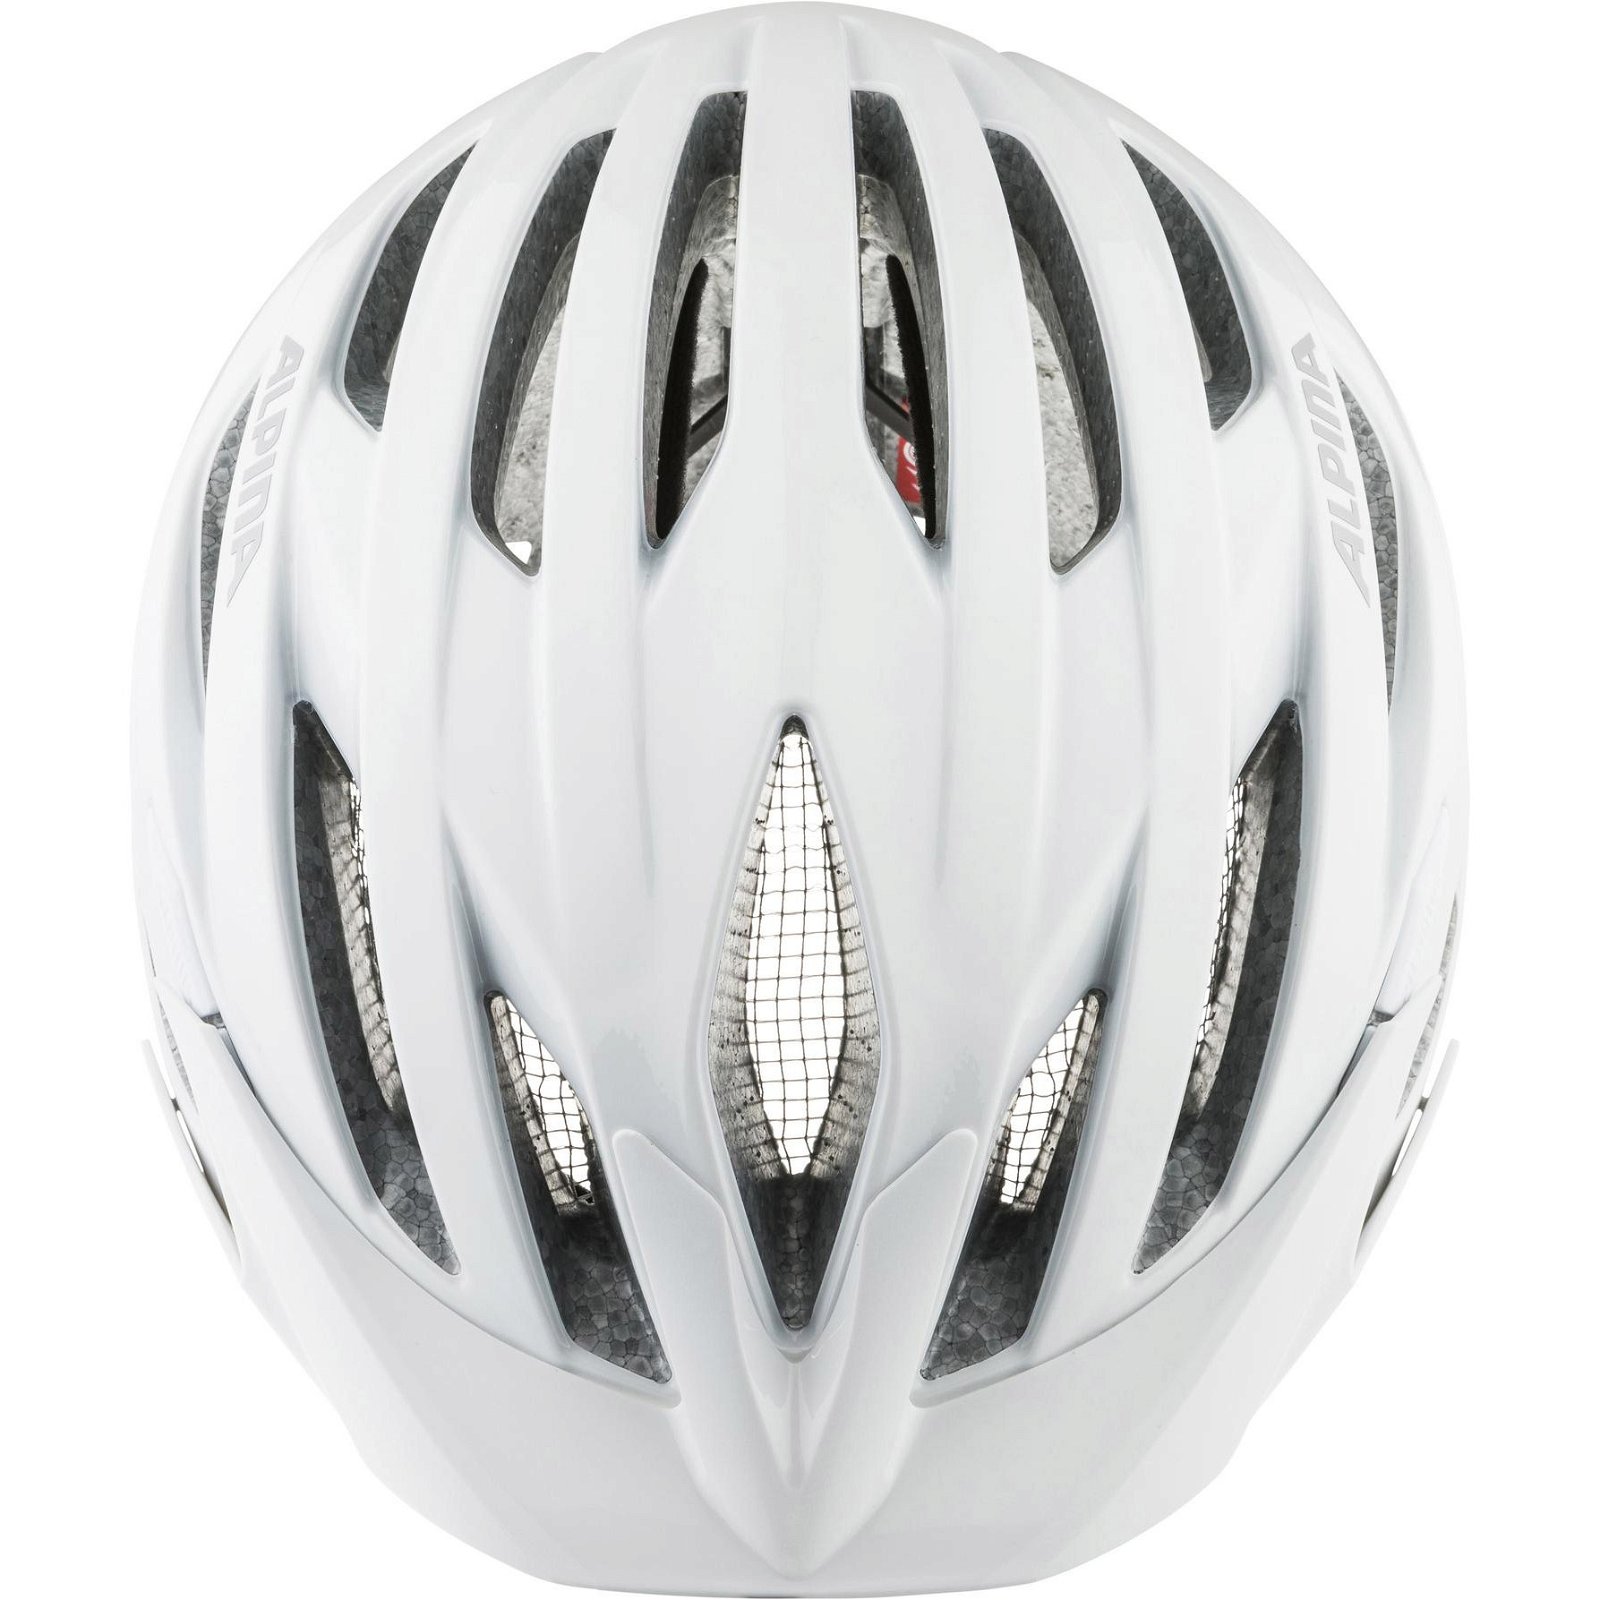 Alpina helm PARANA white gloss 